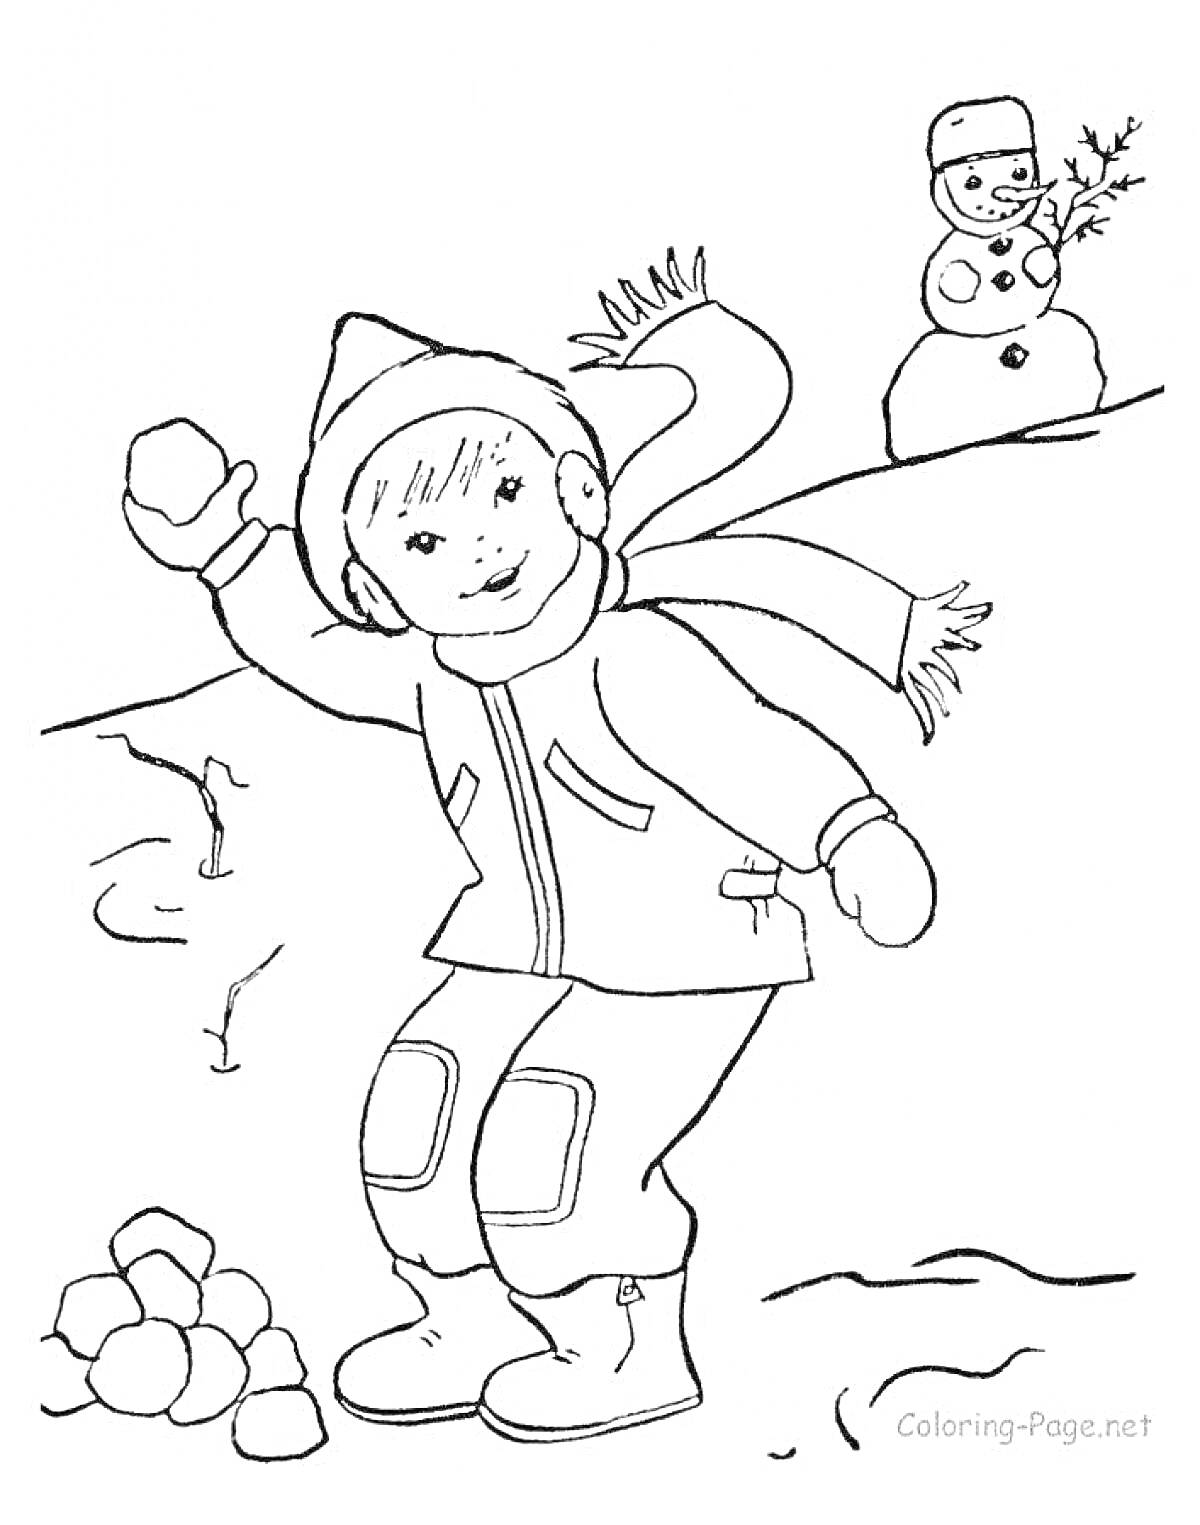 Раскраска Ребенок в зимней одежде играет в снежки, на заднем плане снеговик